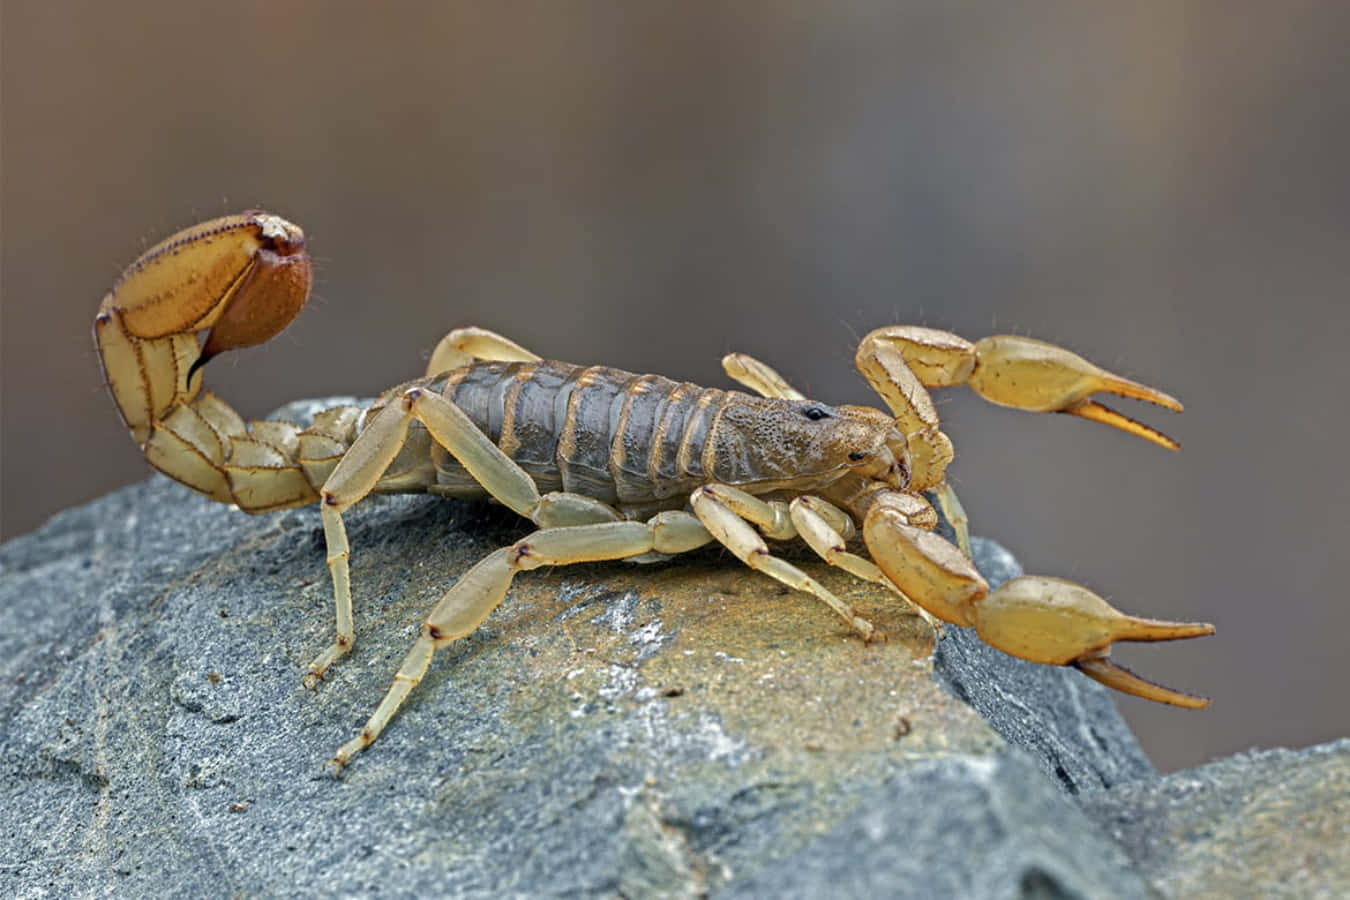 Eineprächtige Skorpion In Seinem Braunen Exoskelett.